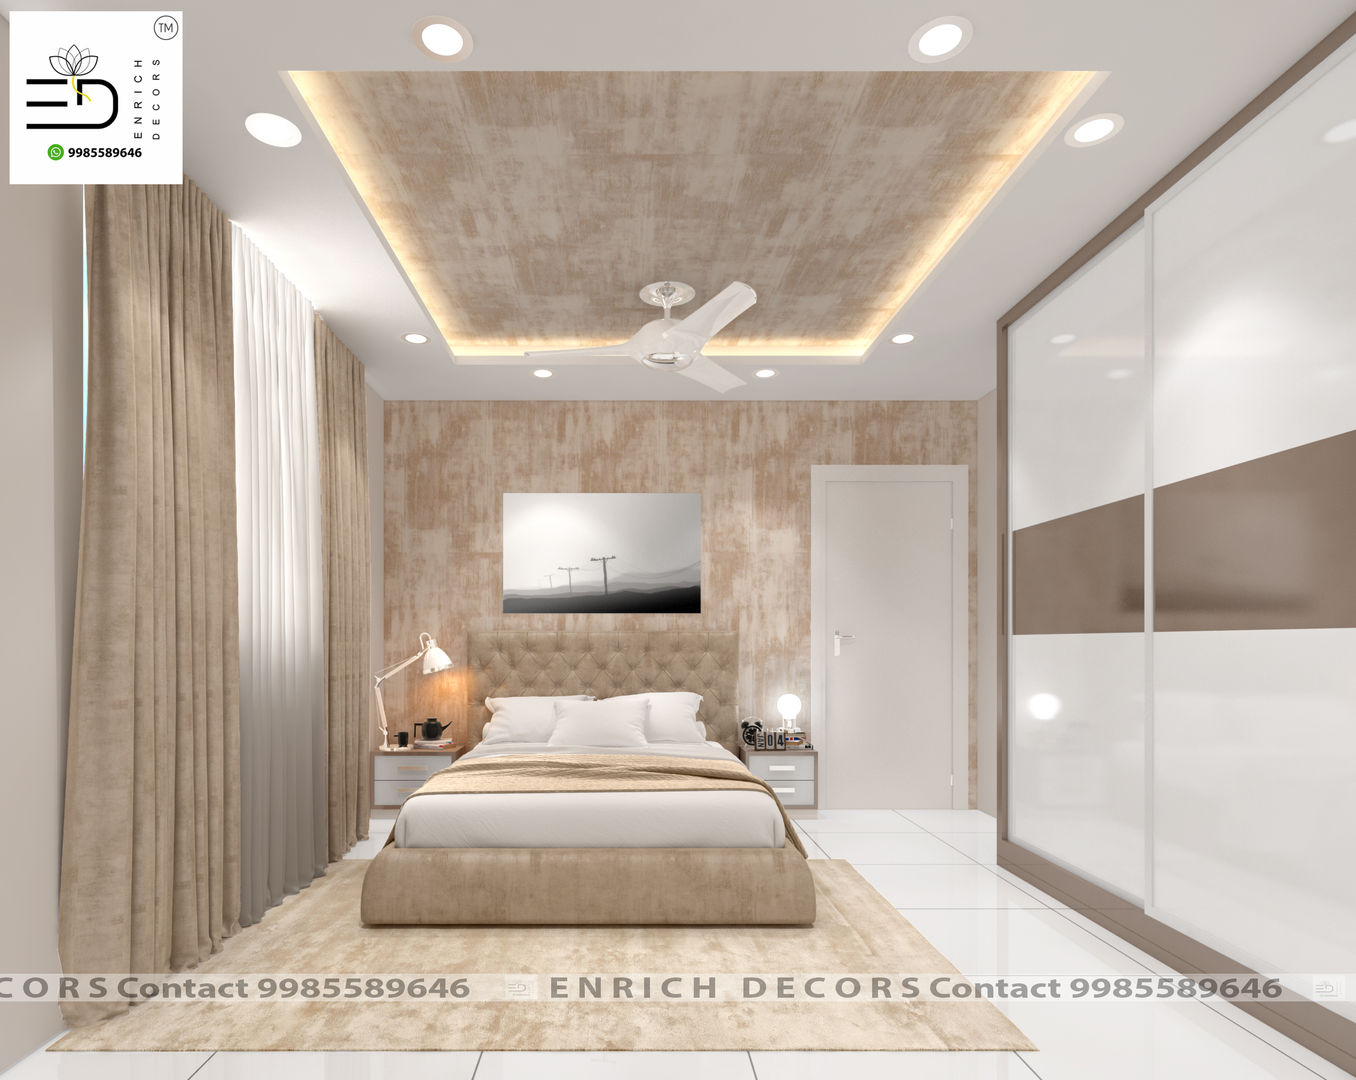 3BHK Interior Design - 1700 sqft, Enrich Interiors & Decors Enrich Interiors & Decors Cuartos pequeños